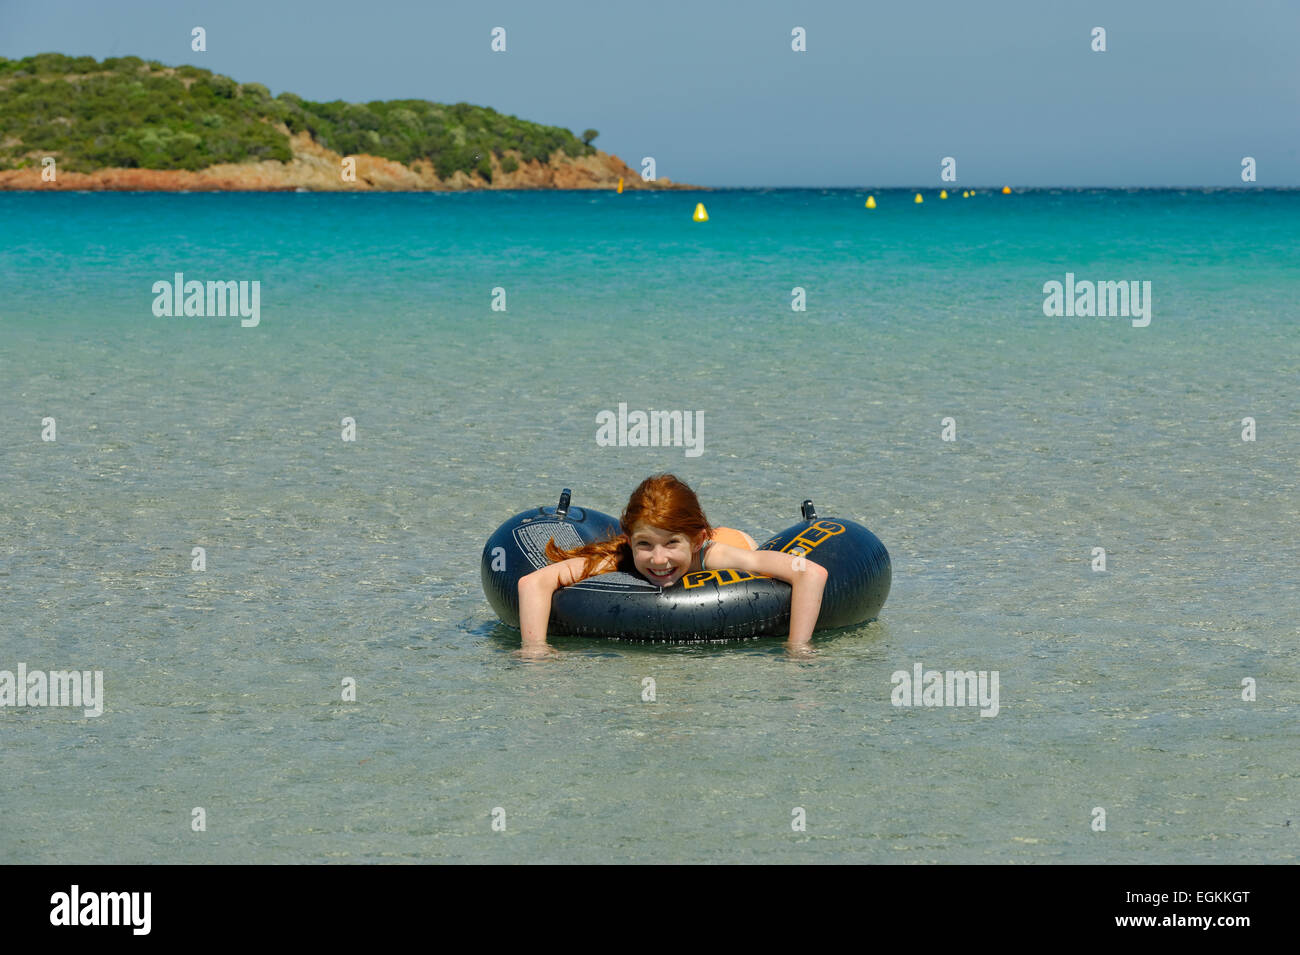 Una chica en grandes neumáticos flotantes en las aguas turquesas de la Bahía de Rondinara, costa sureste, Córcega, Francia Foto de stock